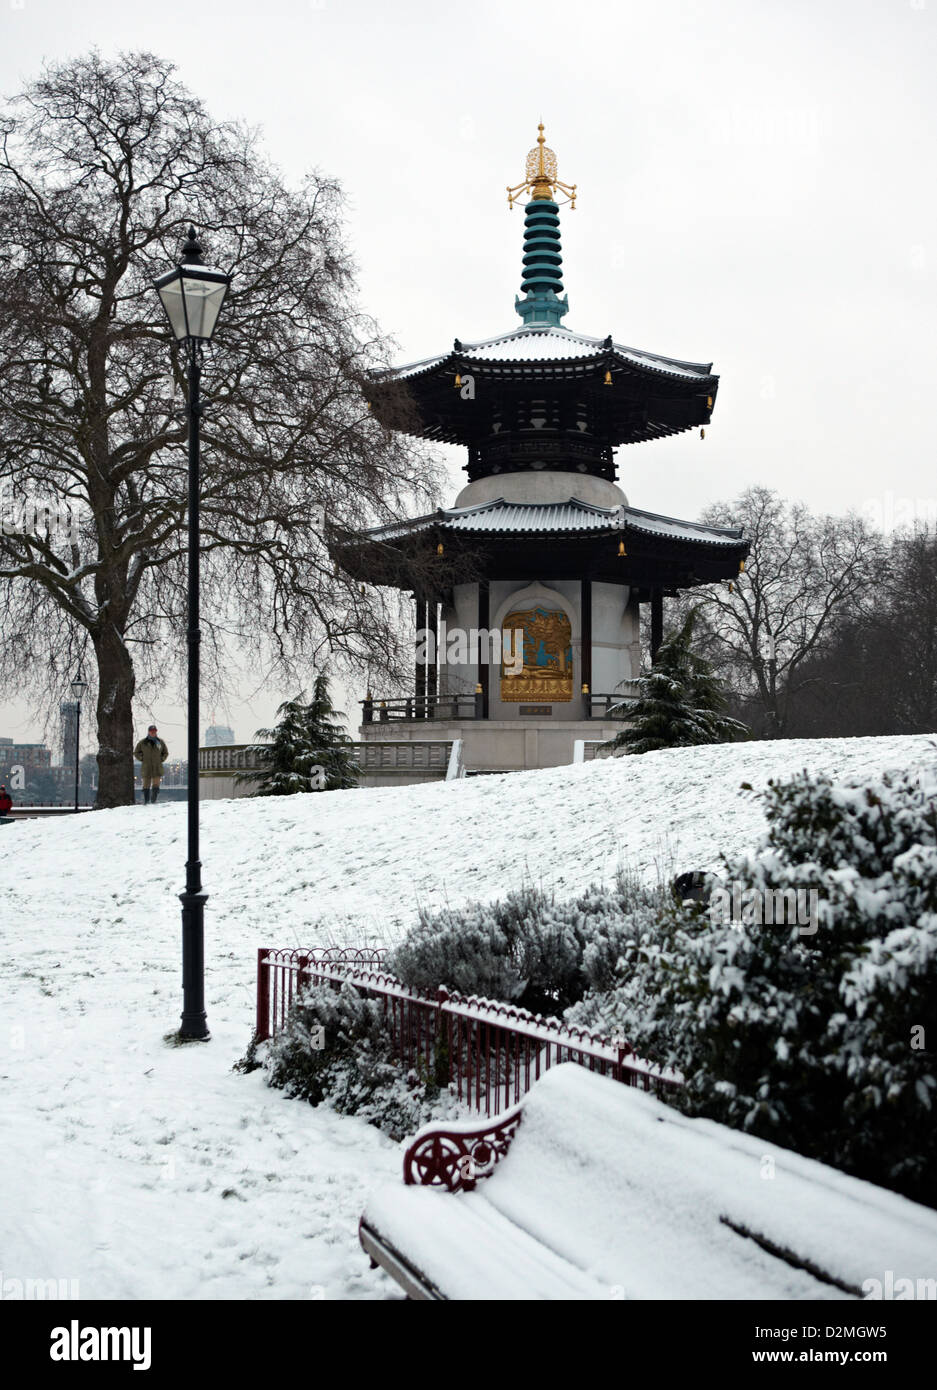 La Pagode de la paix en hiver Battersea Park London UK Banque D'Images